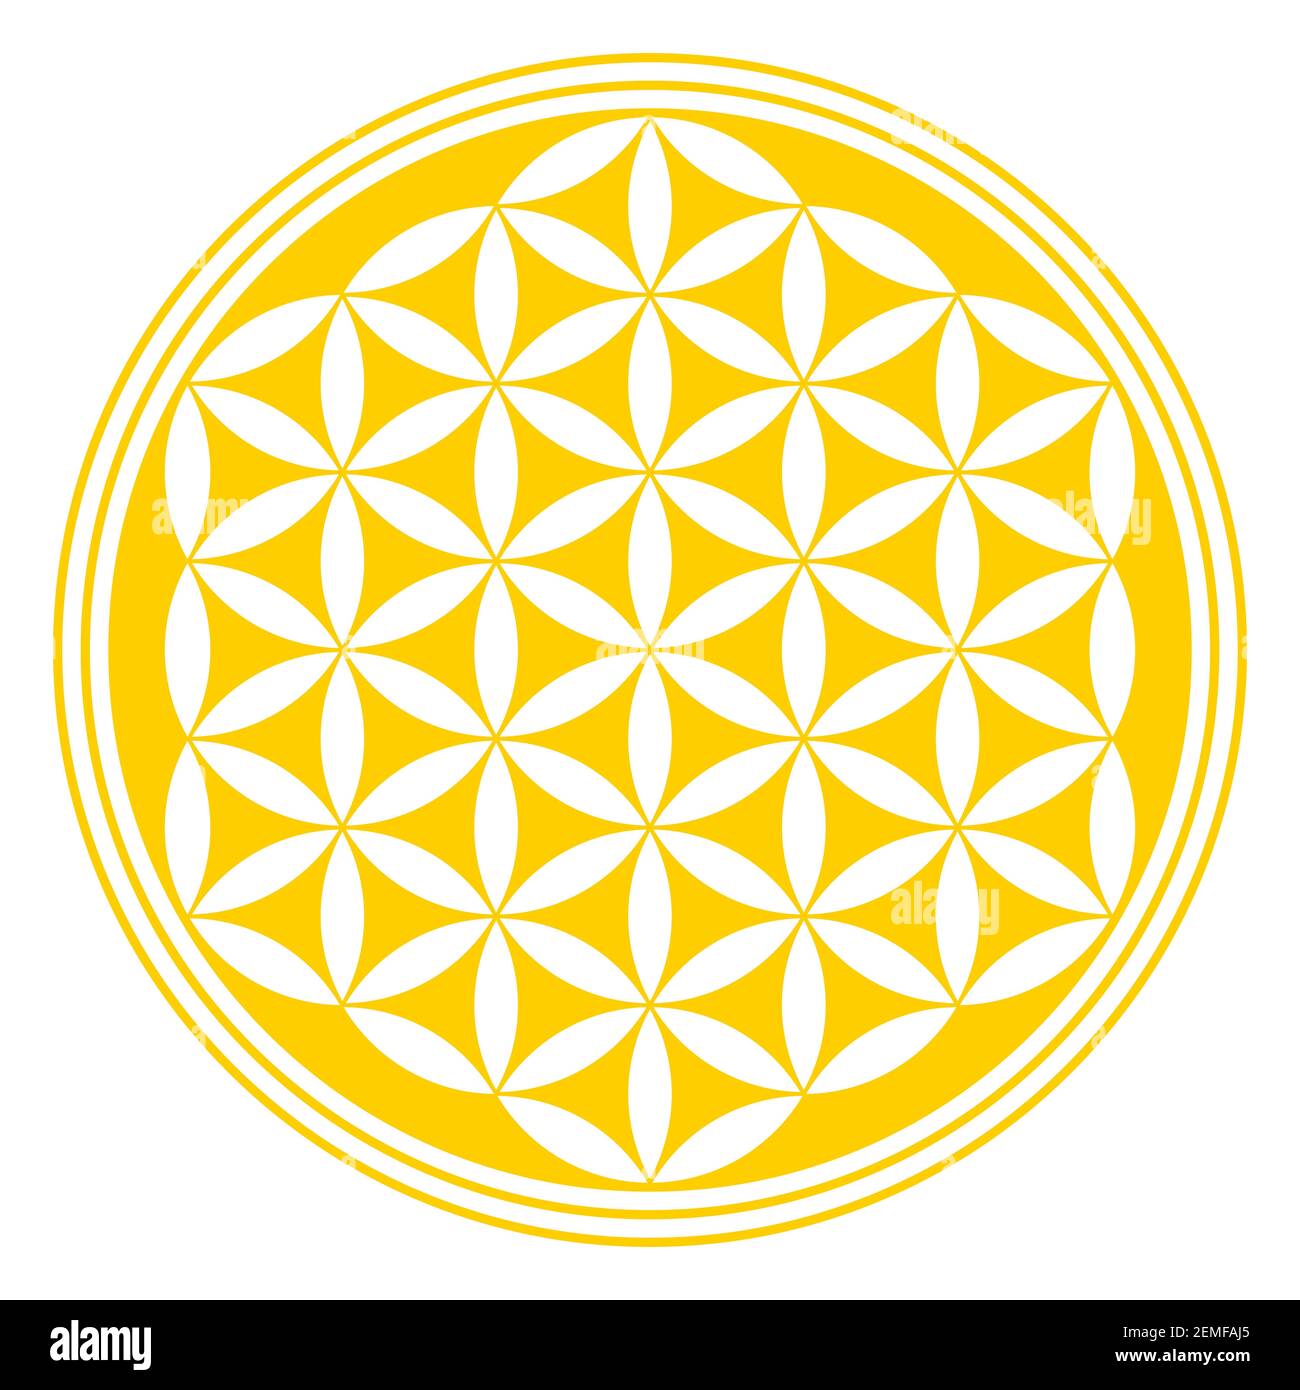 Fleur dorée inversée de la vie. Une figure géométrique, un symbole spirituel et une géométrie sacrée. Cercles se chevauchant formant un mandala, et un motif de fleur. Banque D'Images